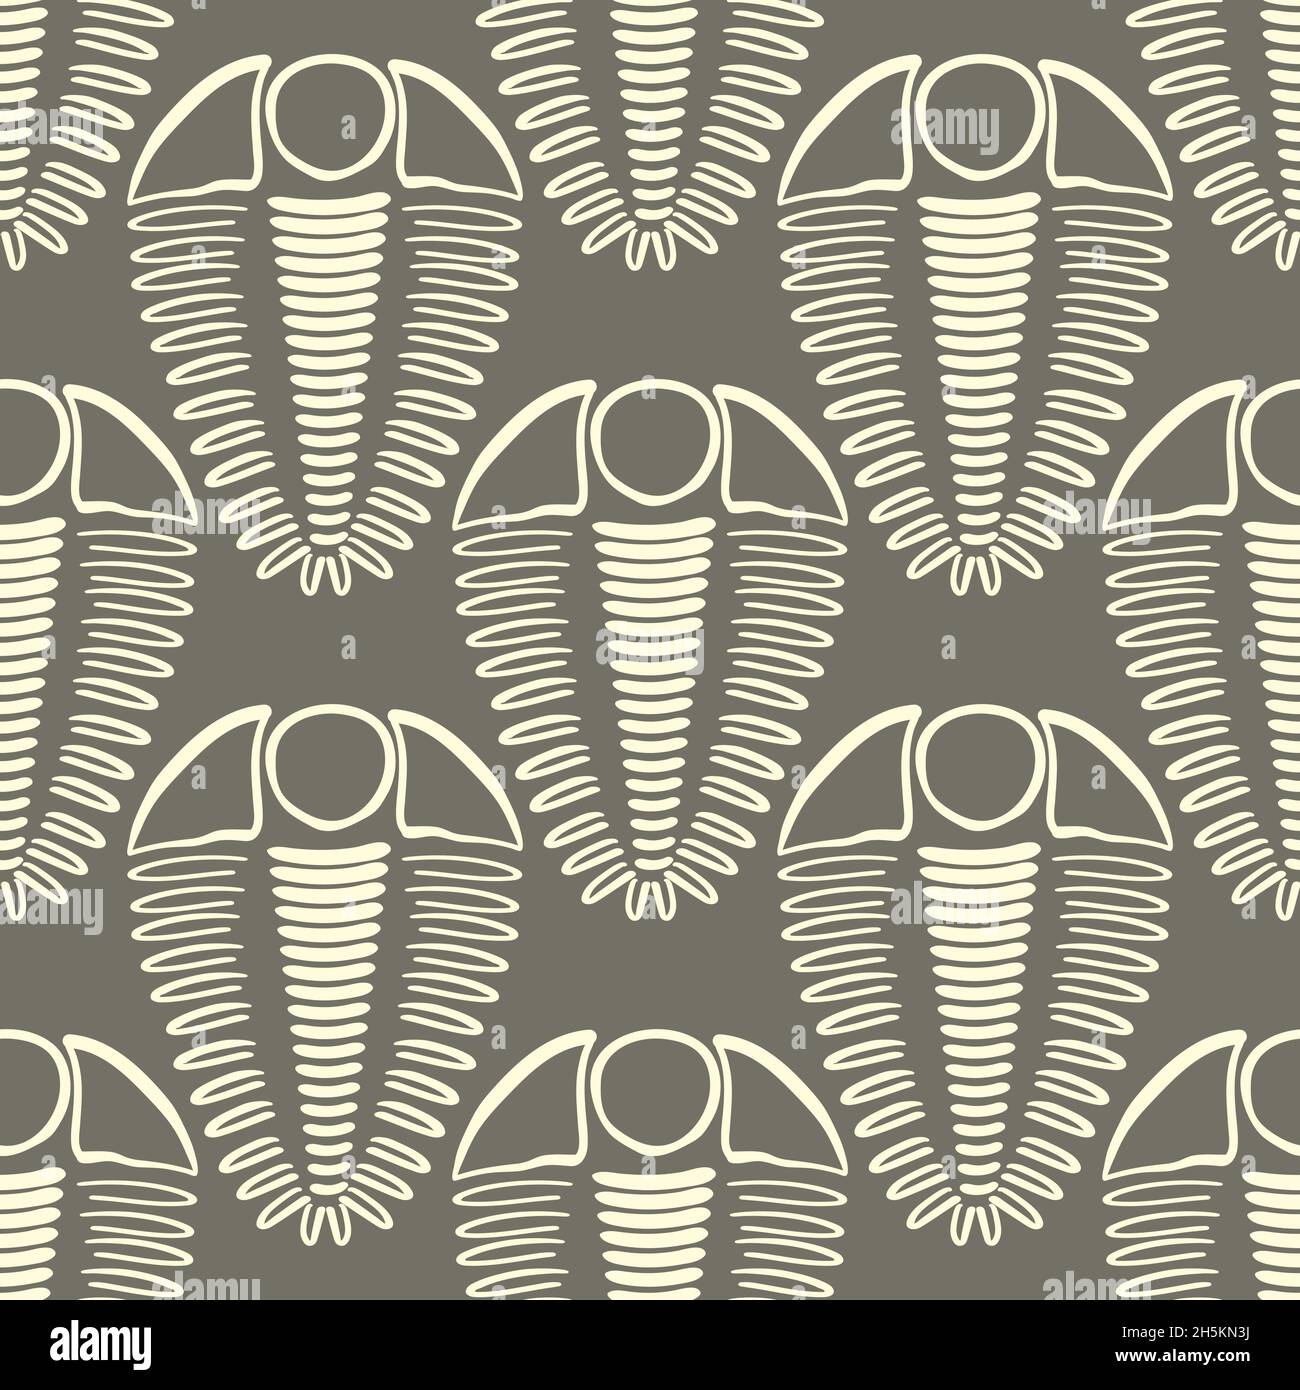 Trilobiten Vektor nahtloses Muster Hintergrund. Handgezeichnete Arthropoden gerippte Schale marine Fossilien. Neutraler brauner Duoton-Hintergrund. Ausgestorbene Kambrium-Periode Stock Vektor